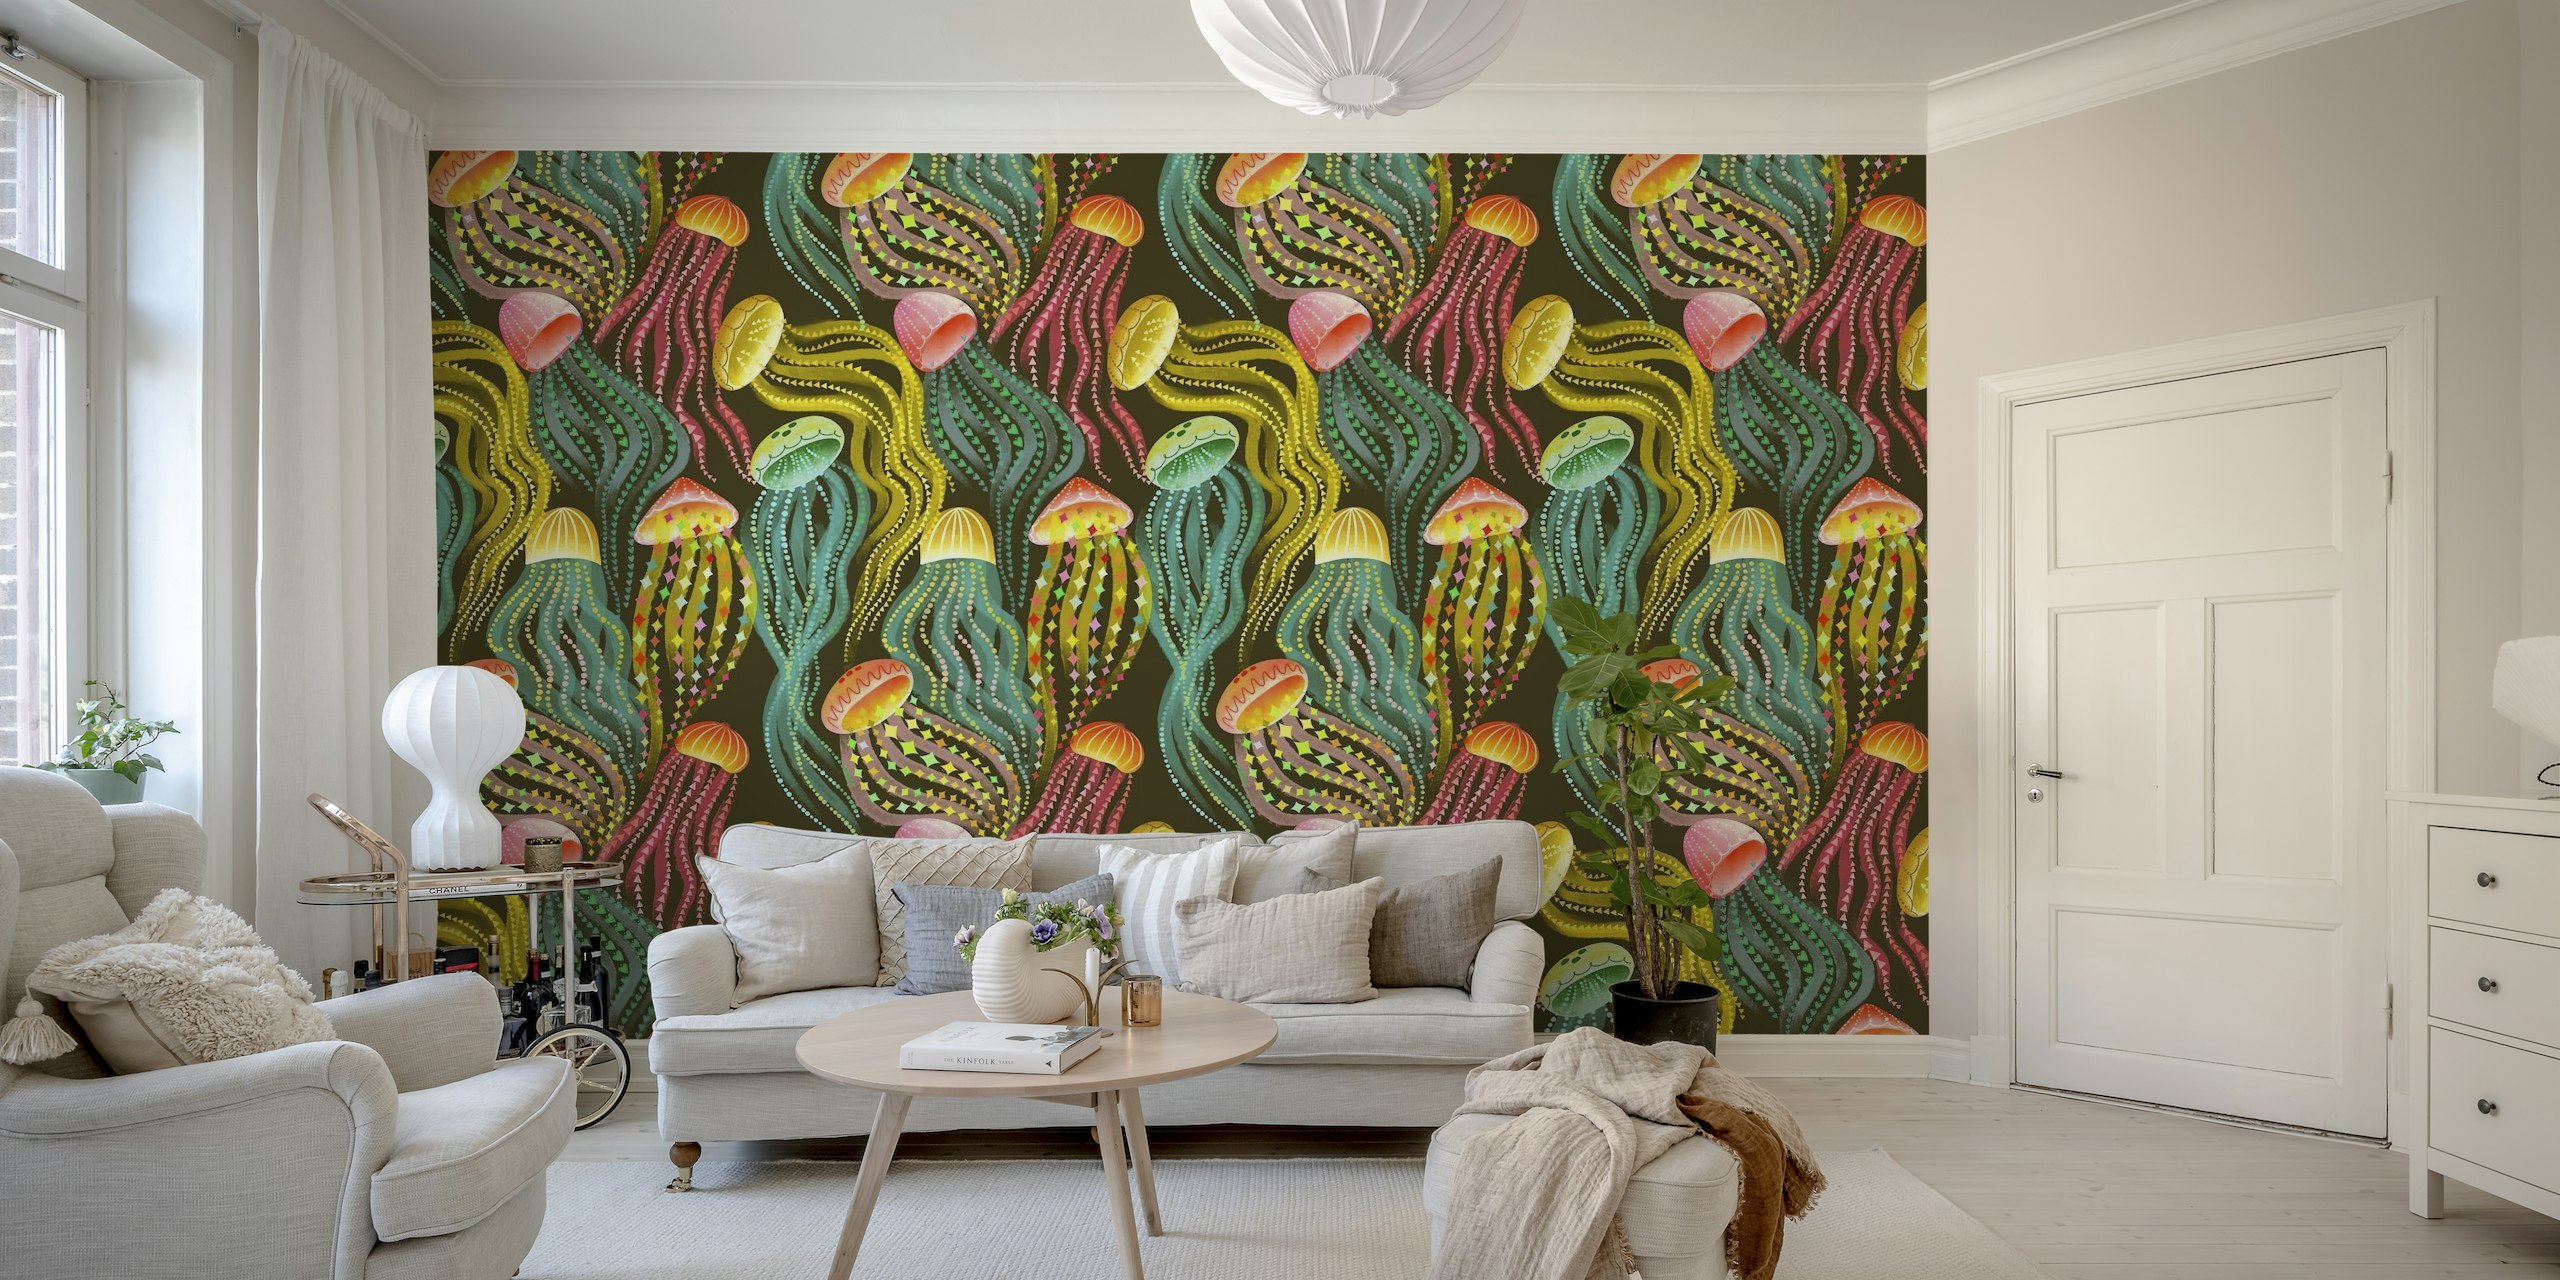 Farbenfrohes Quallen-Wandbild mit dynamischen Mustern auf dunklem Hintergrund